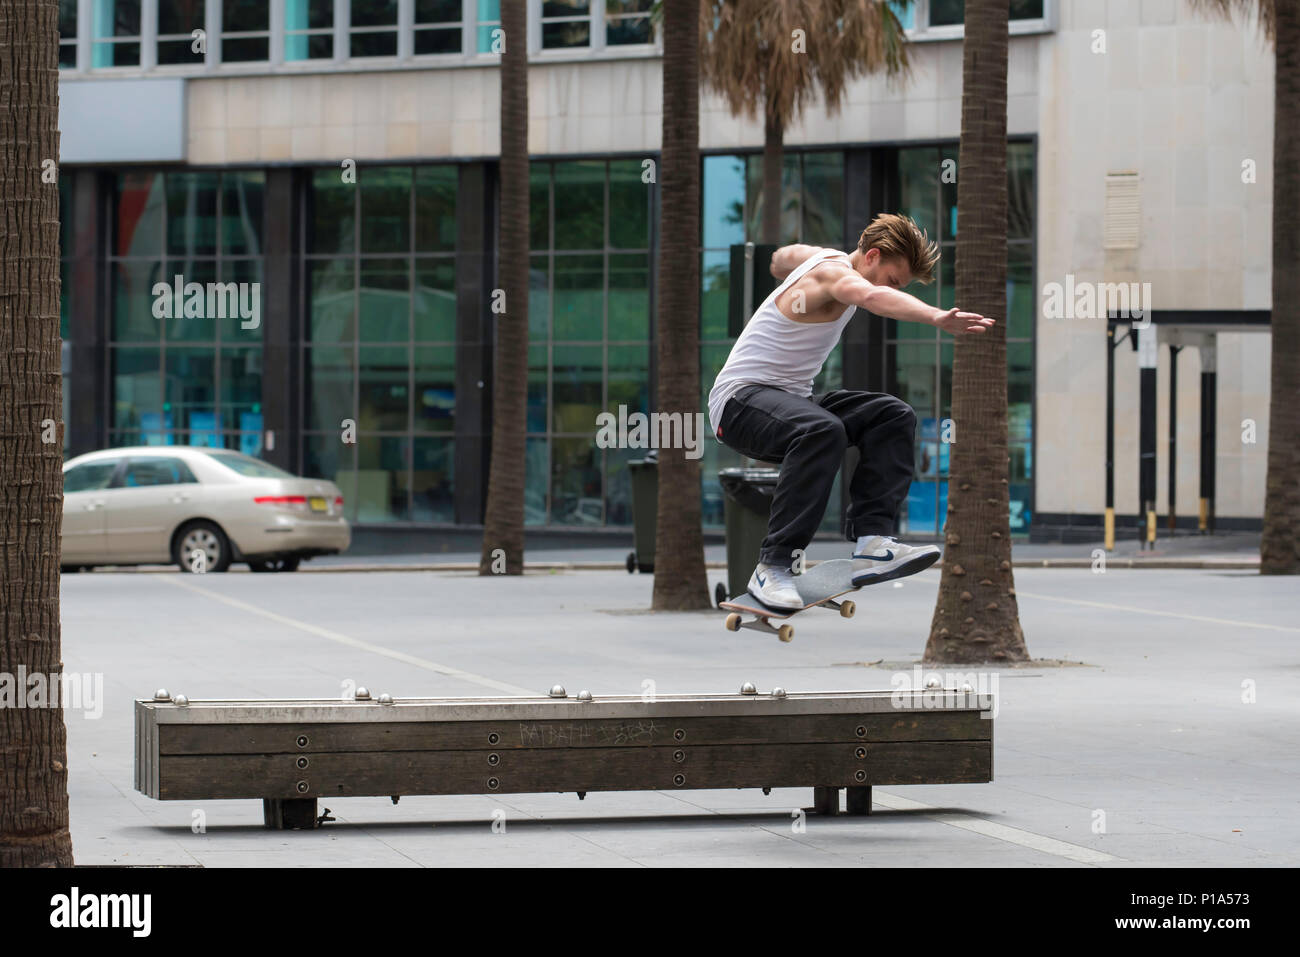 Un skate rider effectue un tour sur un banc dans la ville de Sydney, Australie Banque D'Images